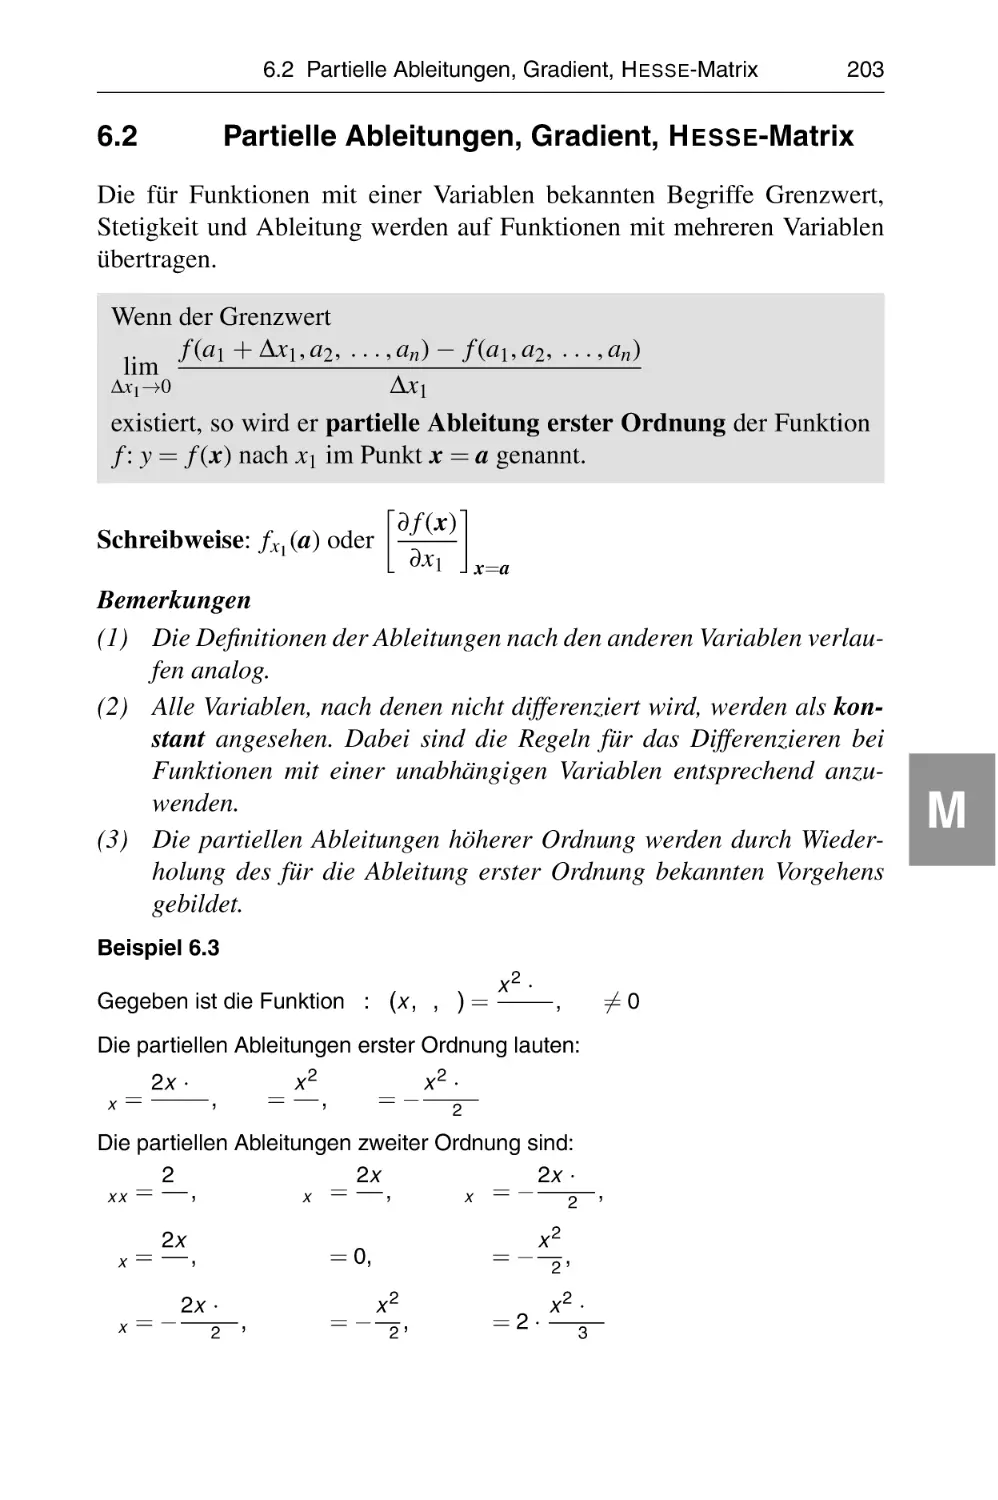 6.2 Partielle Ableitungen, Gradient, Hesse-Matrix